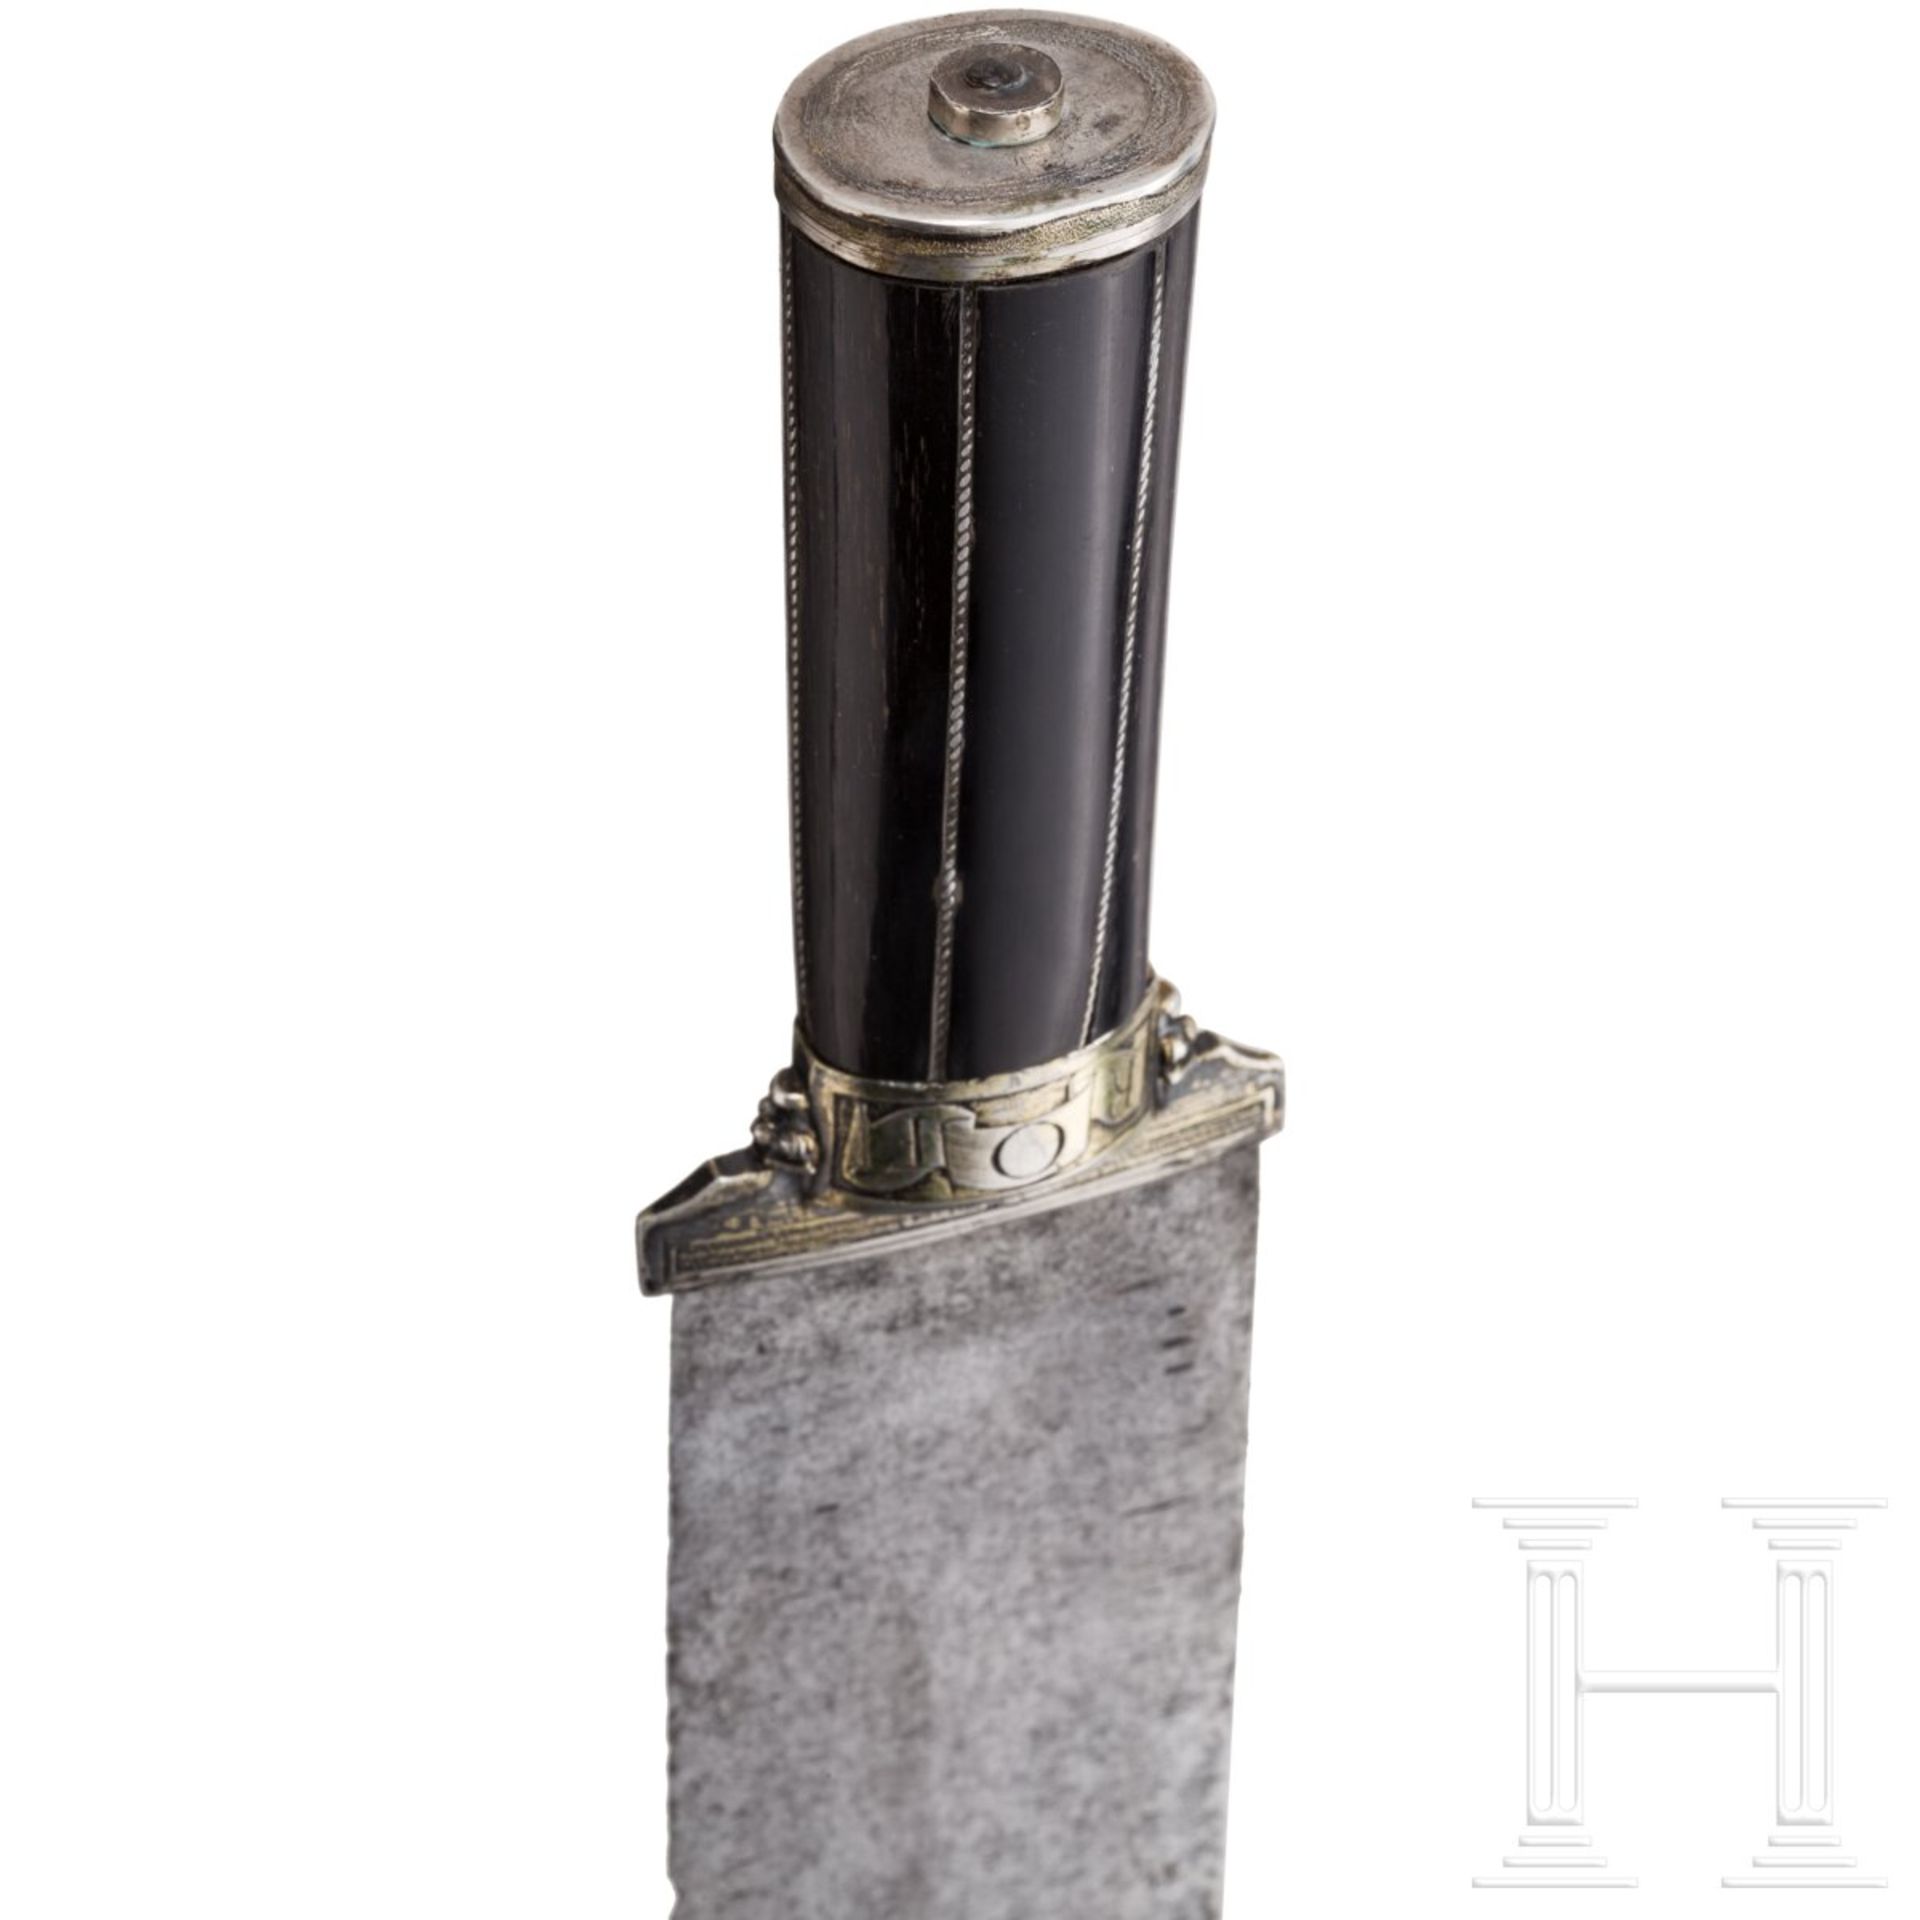 Silbermontiertes Vorlegemesser mit Griff aus Steinbockhorn, süddeutsch, 16. Jhdt. - Bild 7 aus 7